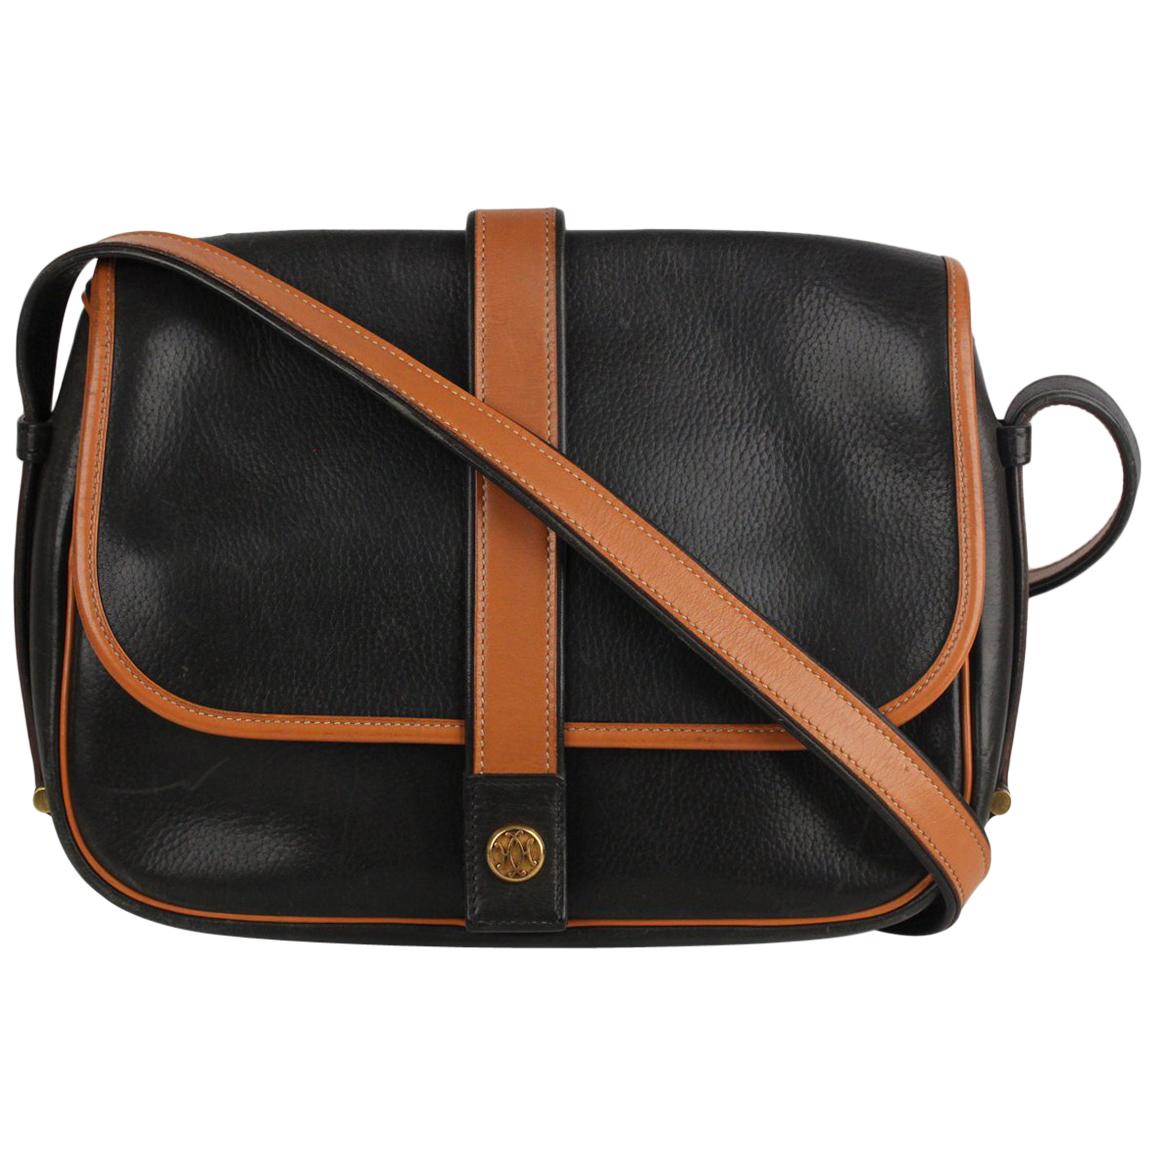 Hermes Vintage Black and Tan Leather Noumea Shoulder Bag